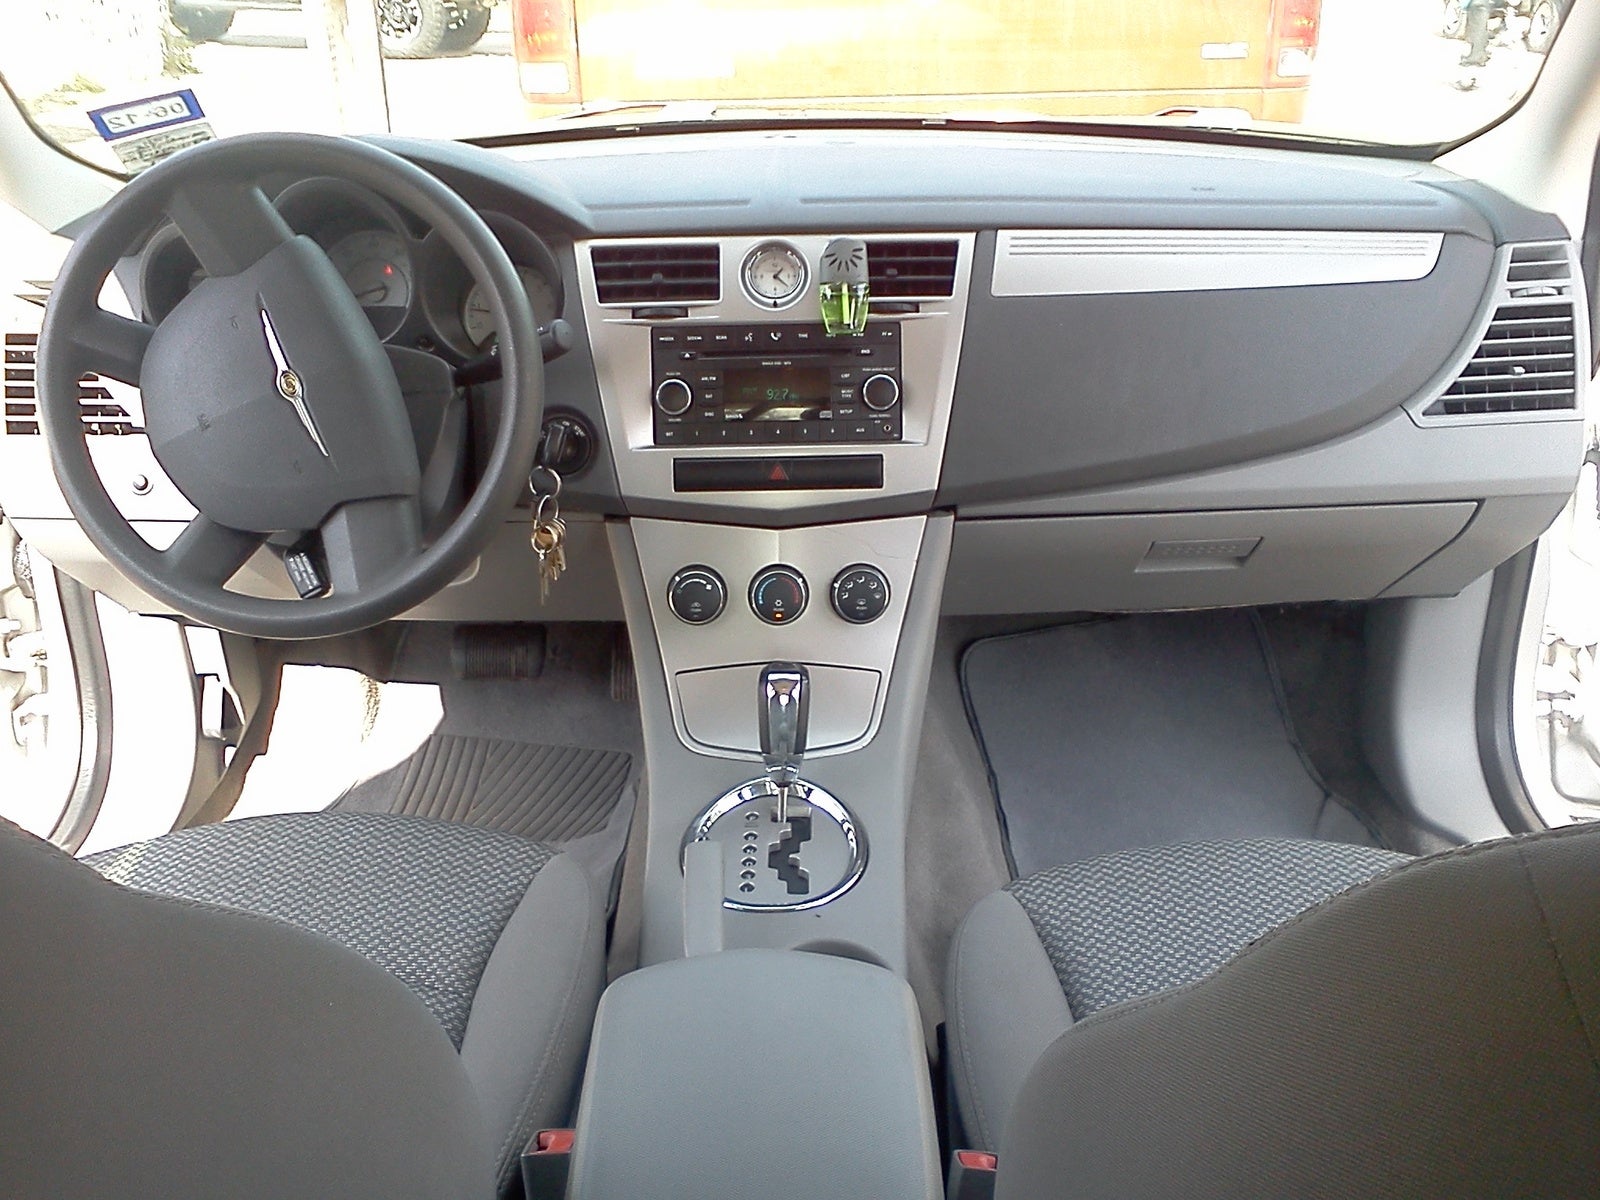 2008 Chrysler sebring interior photos